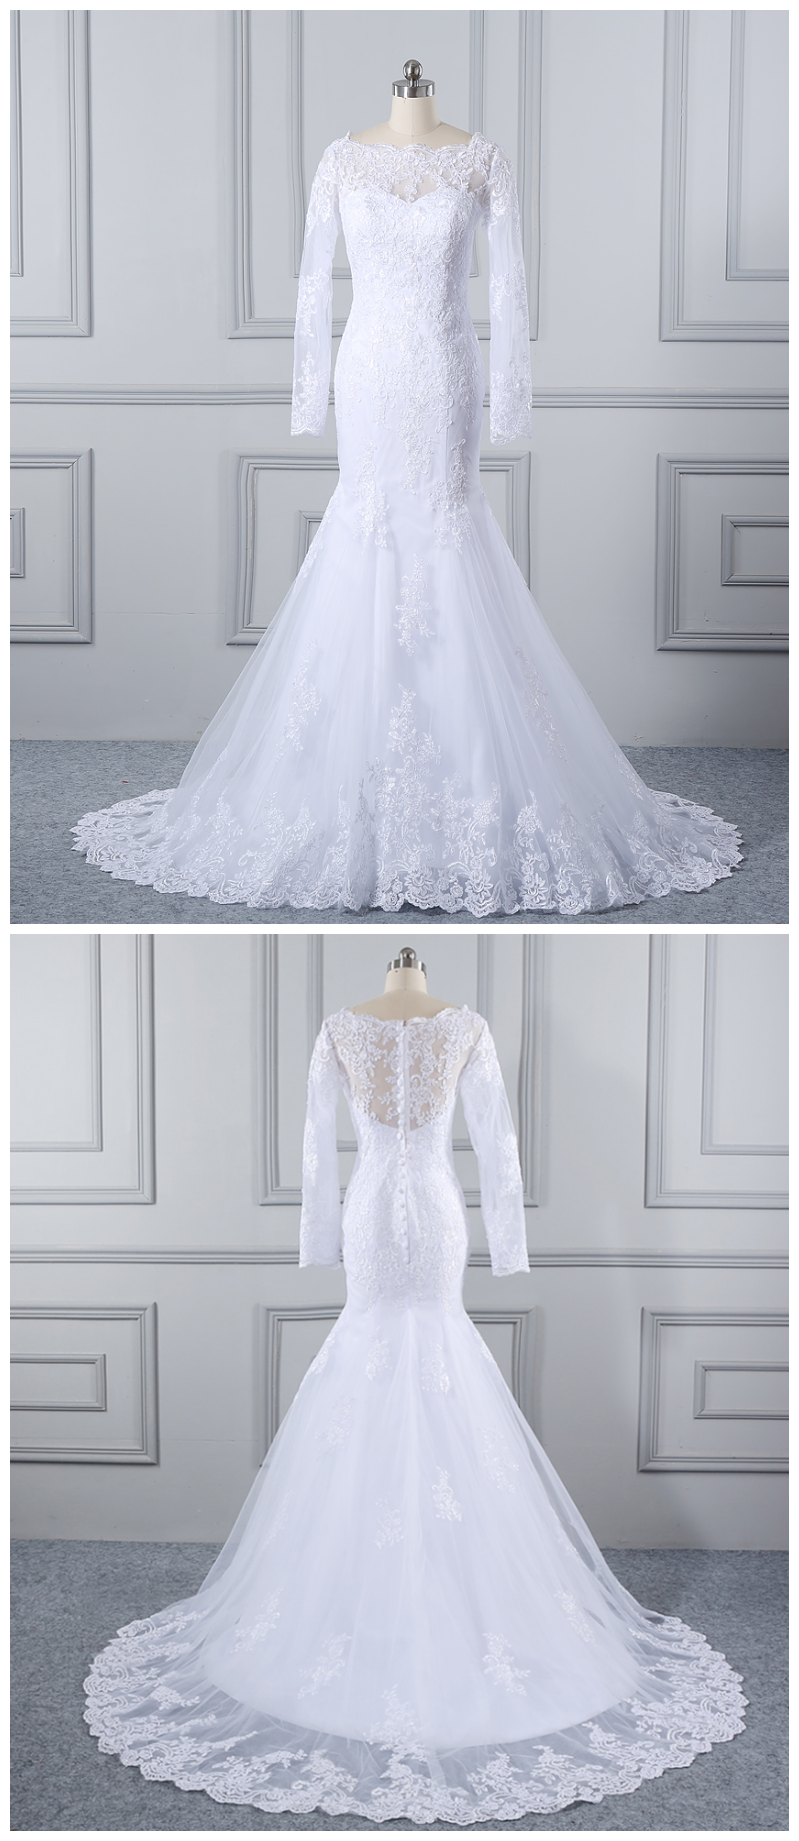 Ball Gown Wedding Gowns, Robe De Mariage Long Sleeve Lace Wedding Dress, Ball Gown Wedding Dresses Vestidos De Novia